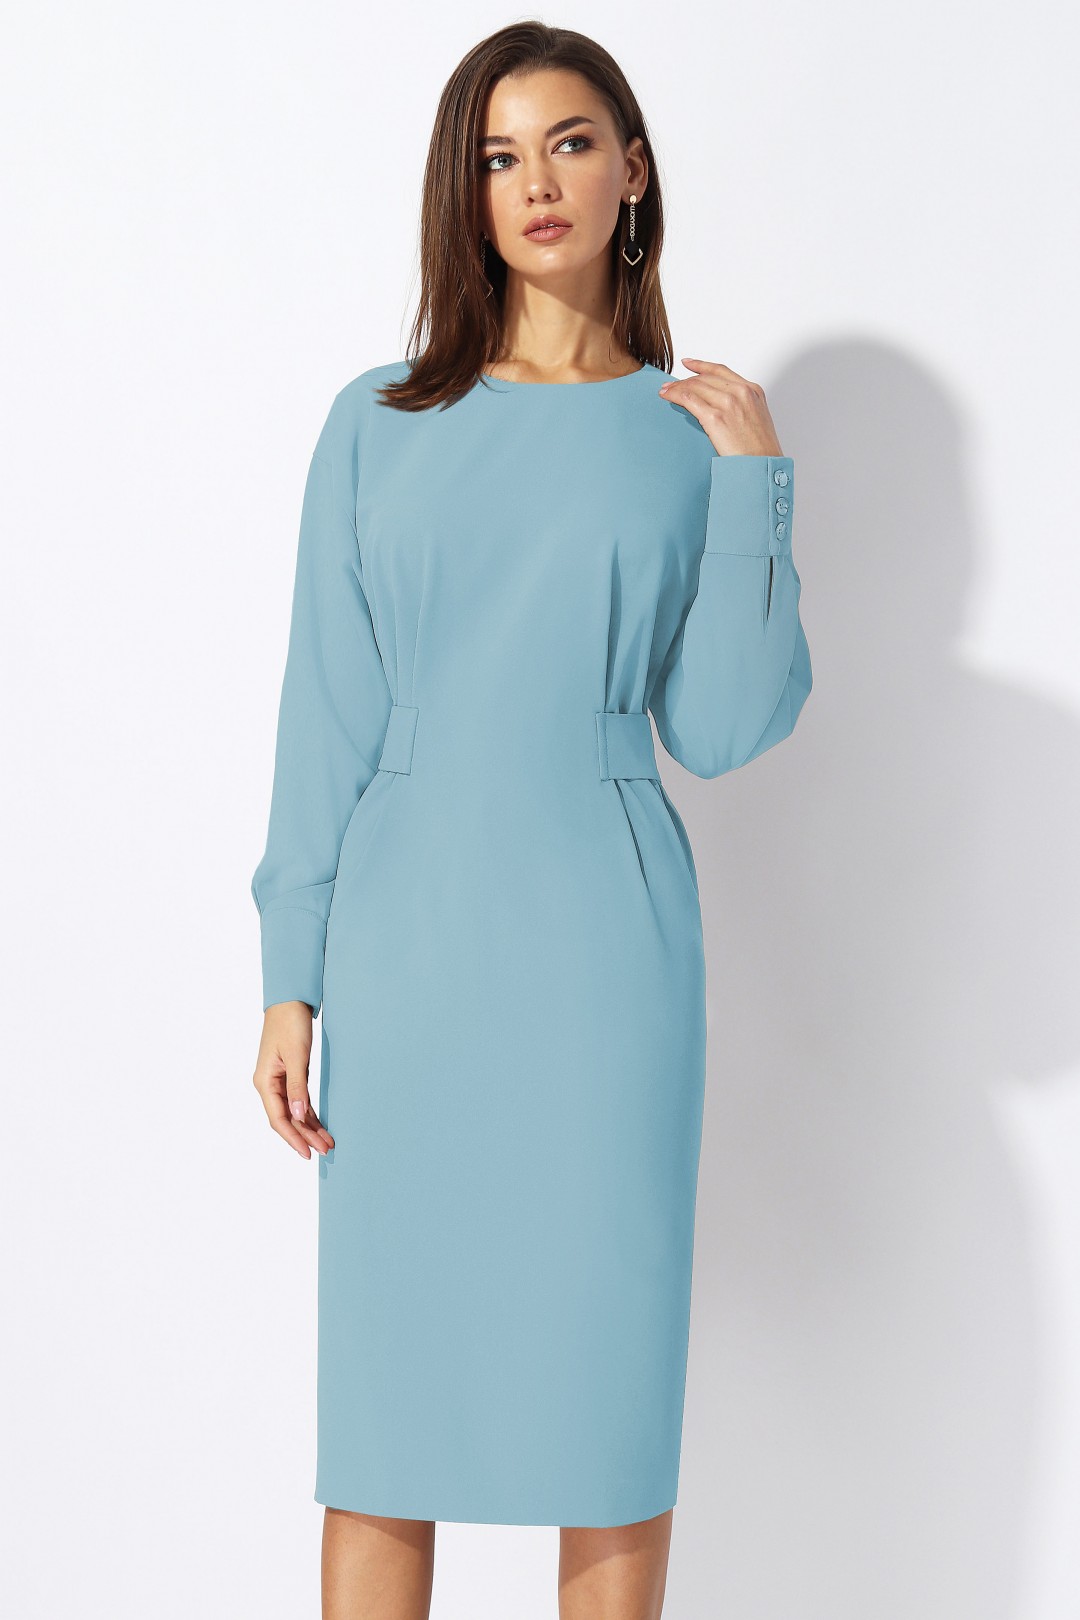 Платье МиА-Мода 1197-3 голубой